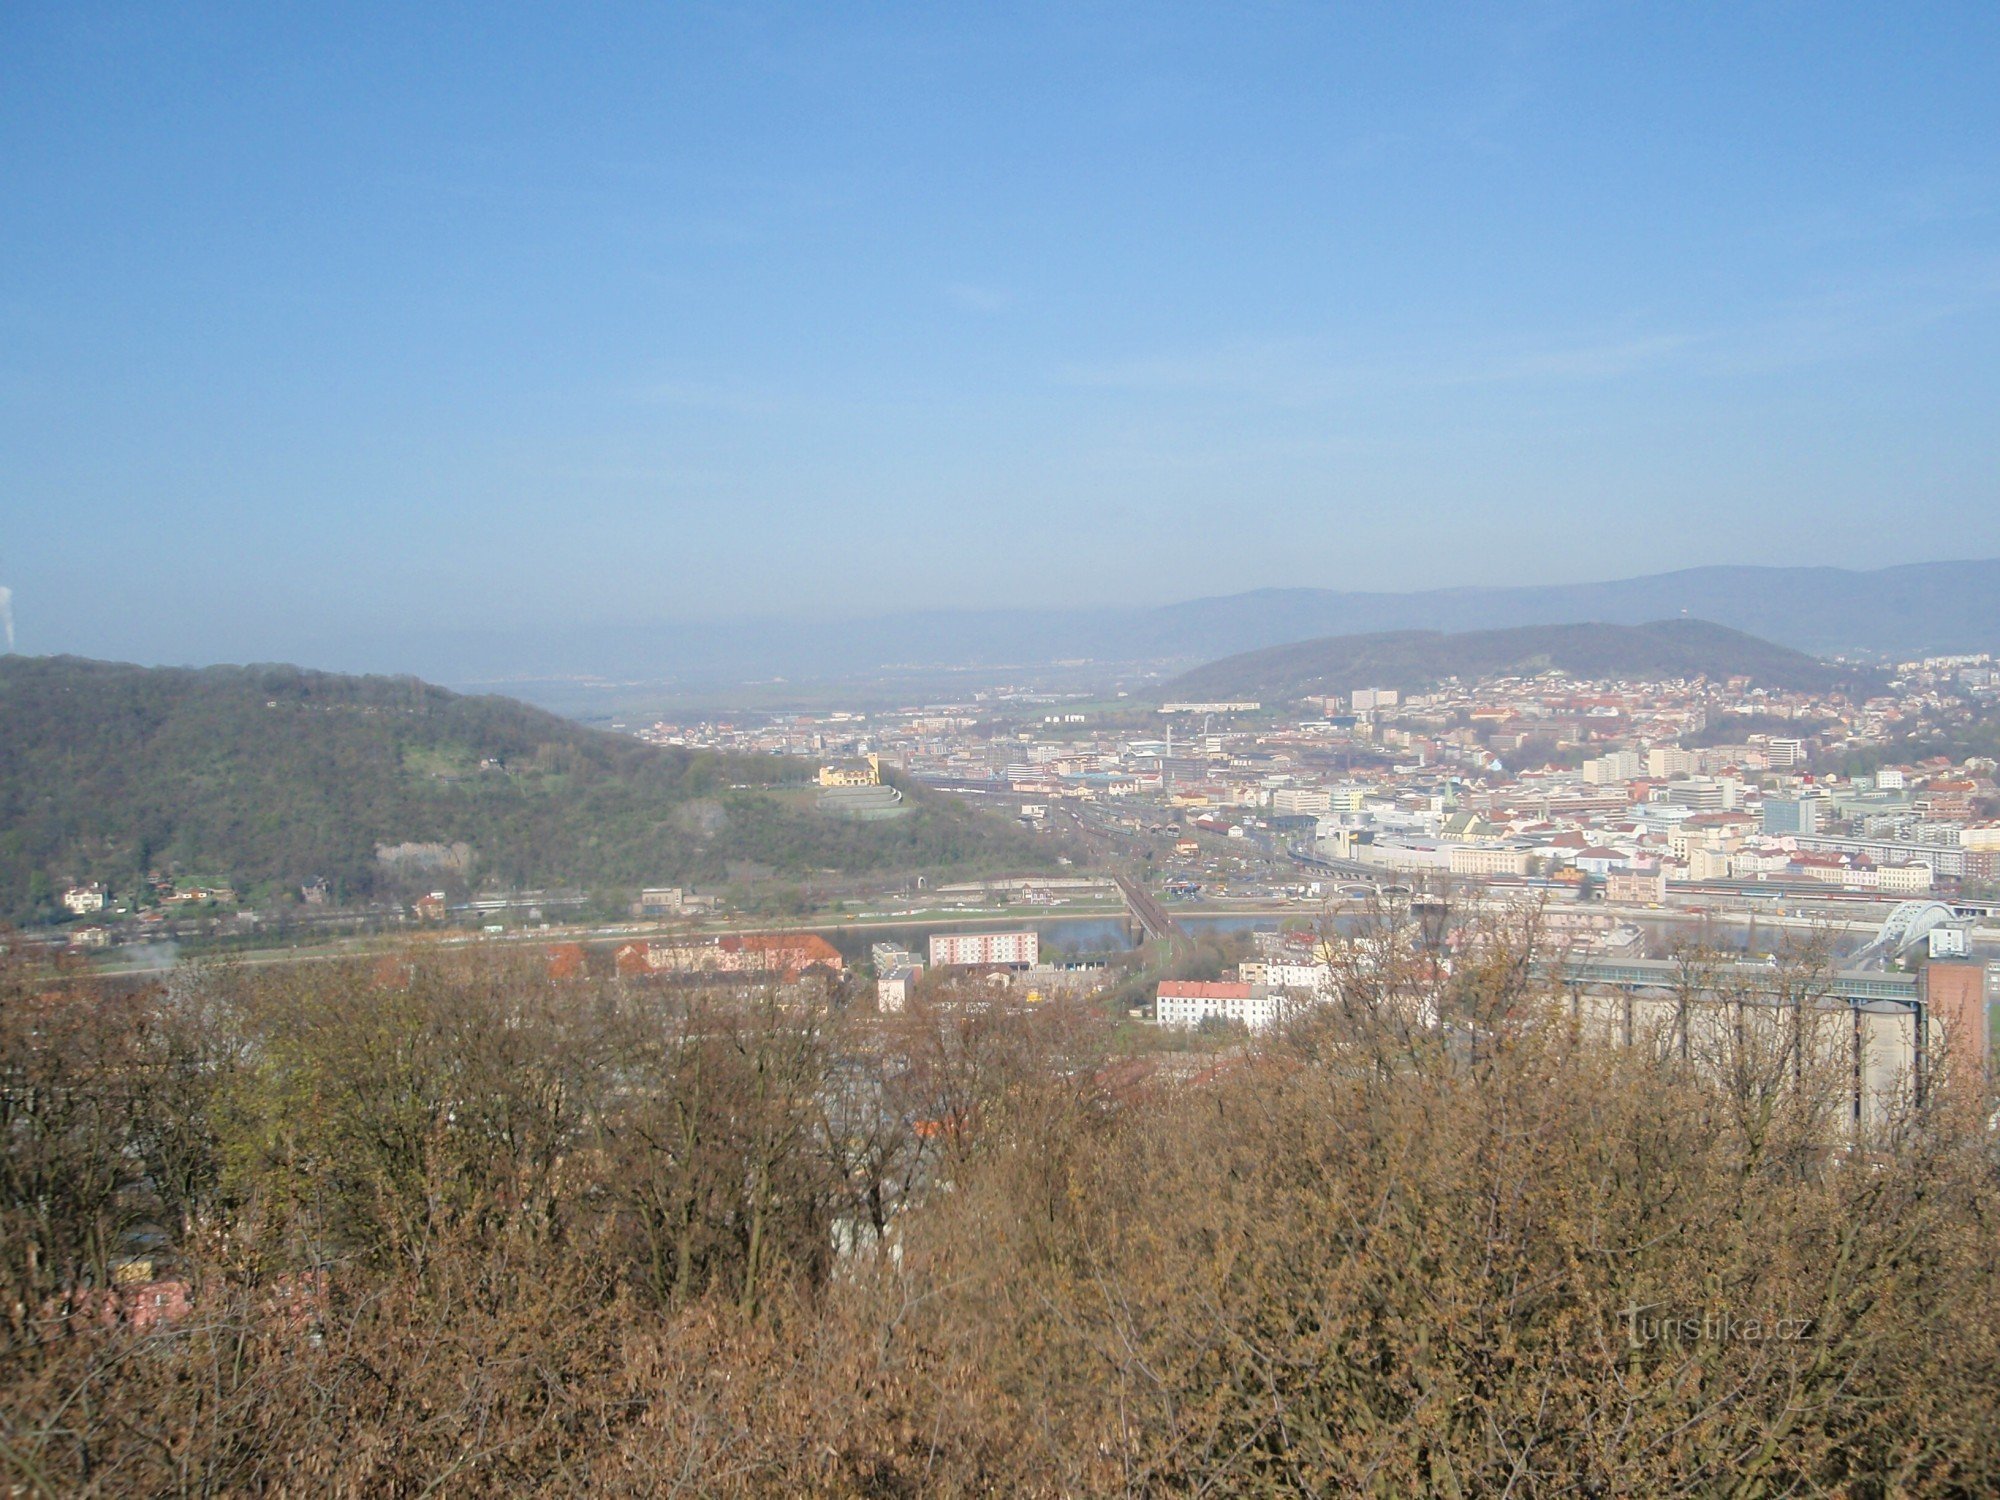 Kilátás az Ústi kilátóból, a dombon balra, sárga épület, Větruše vár